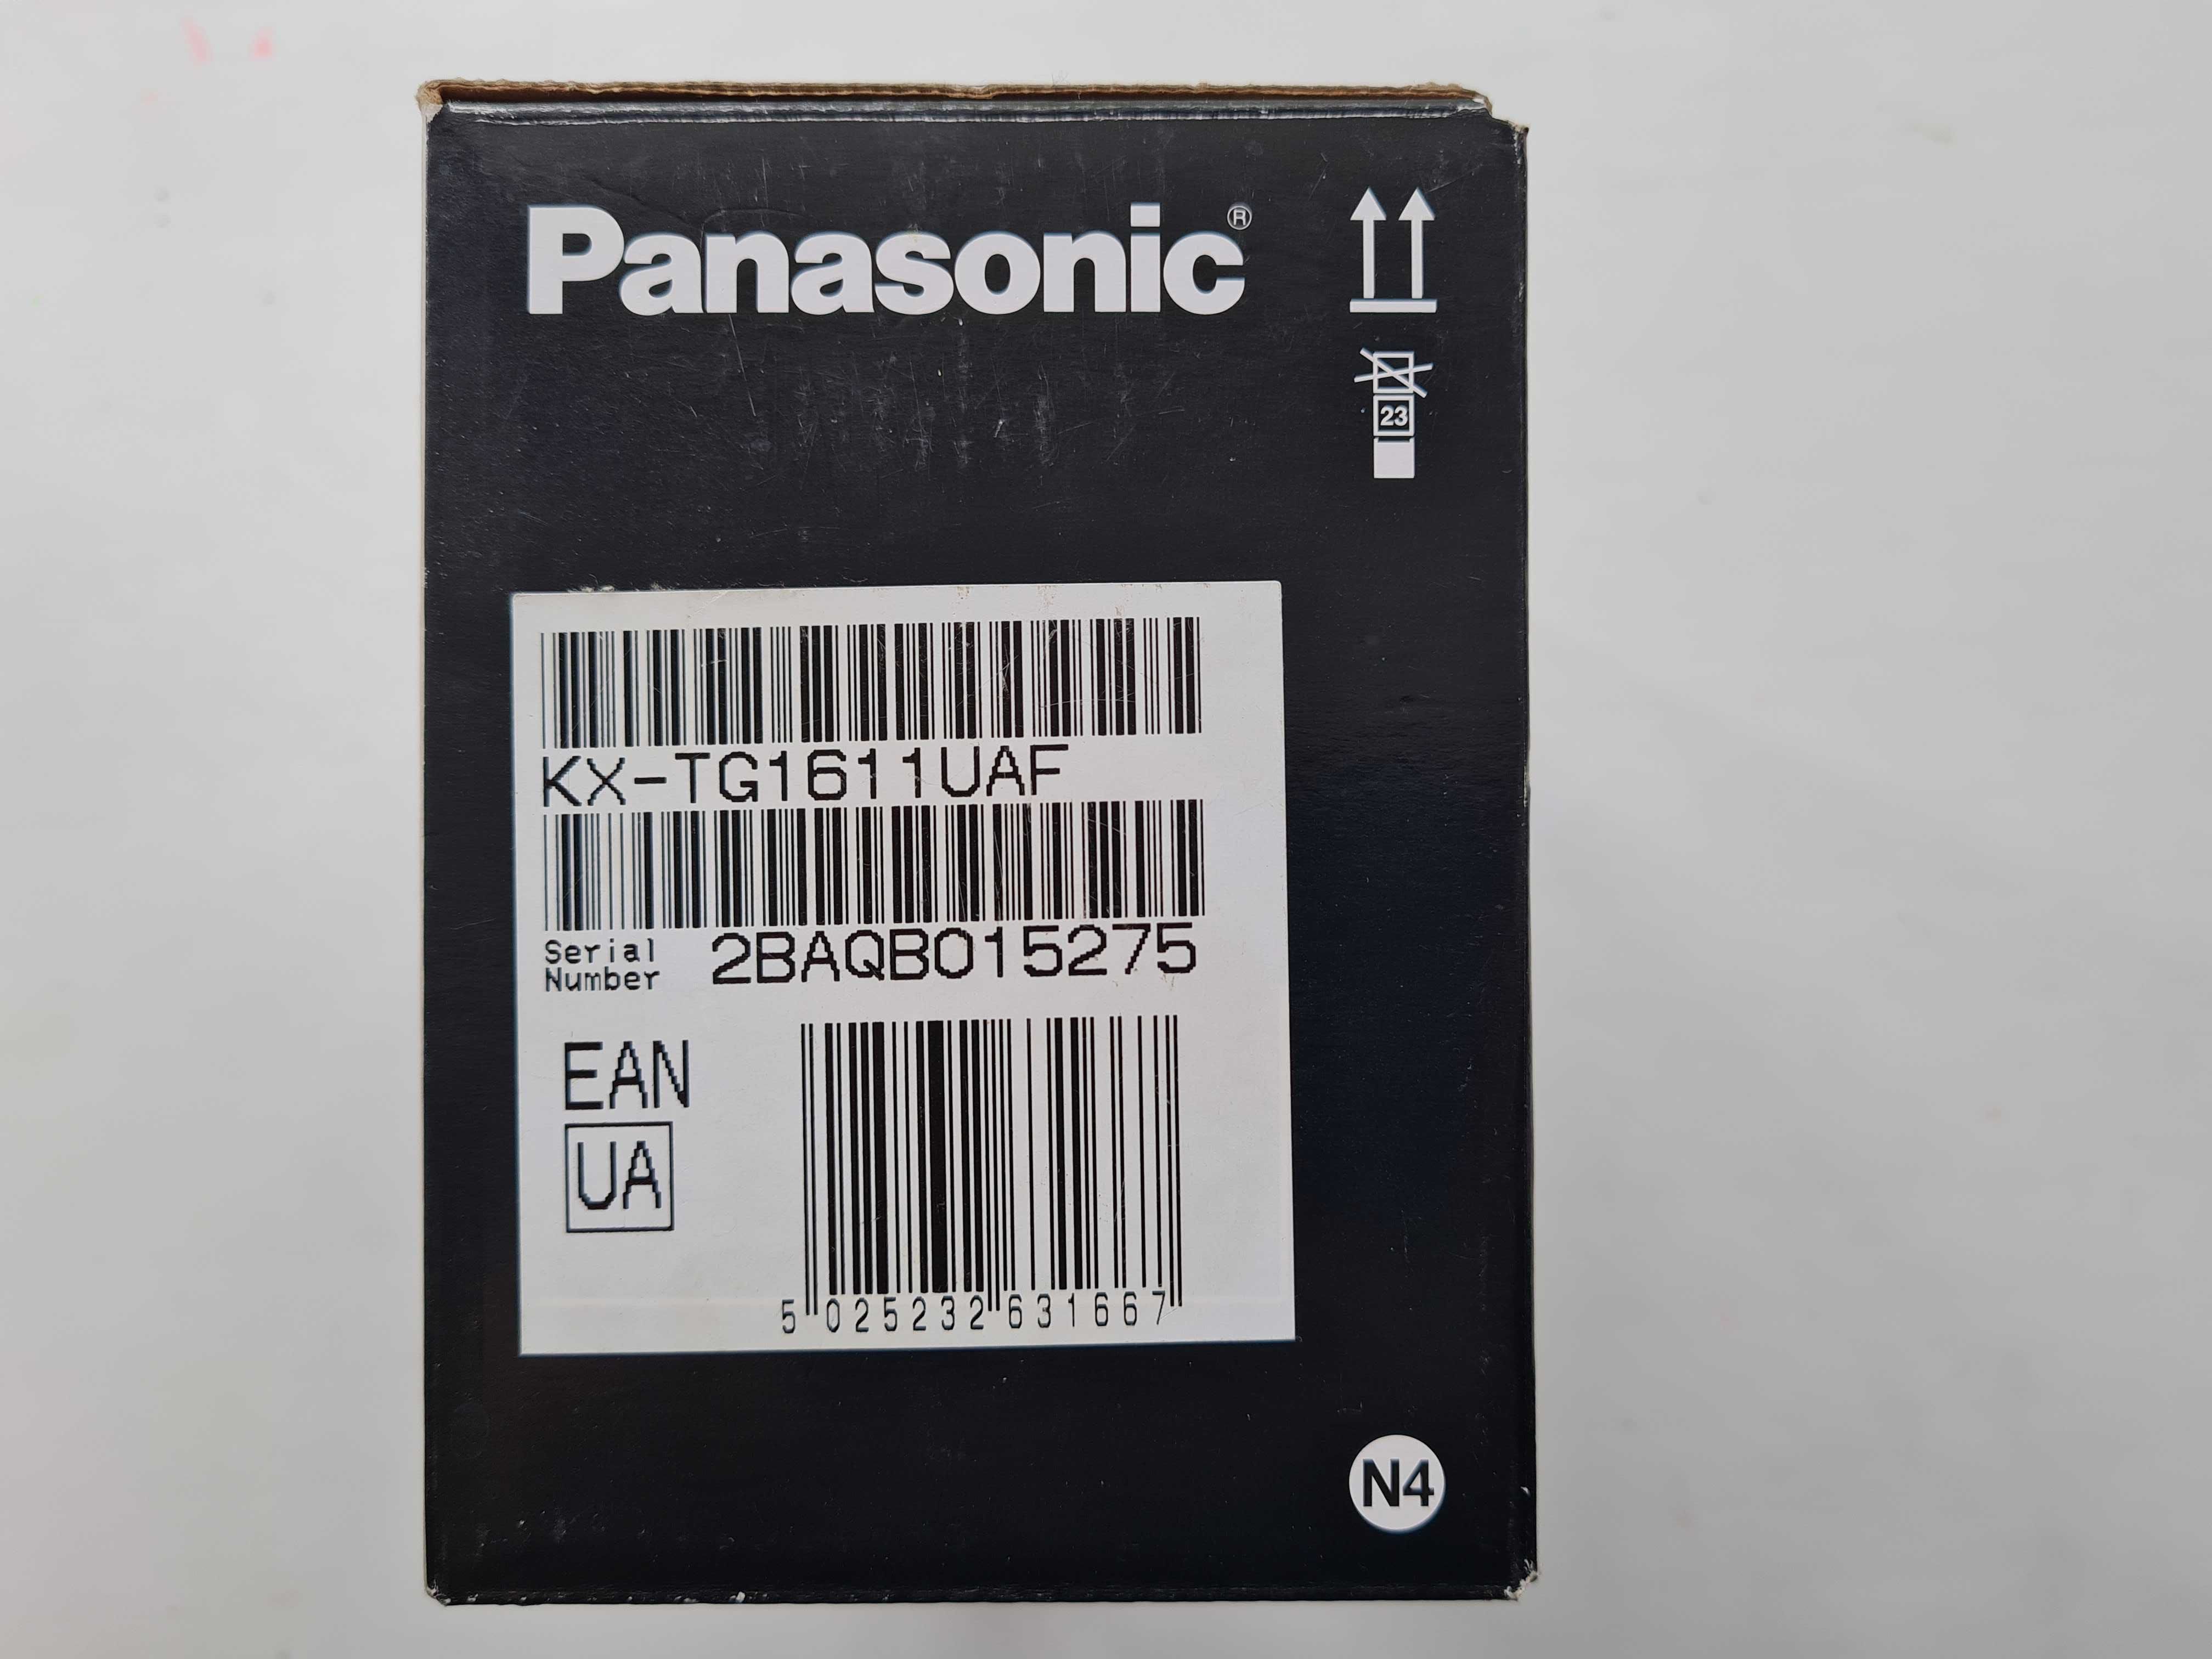 Цифровой беспроводный телефон Panasonik RX-T1611 UA